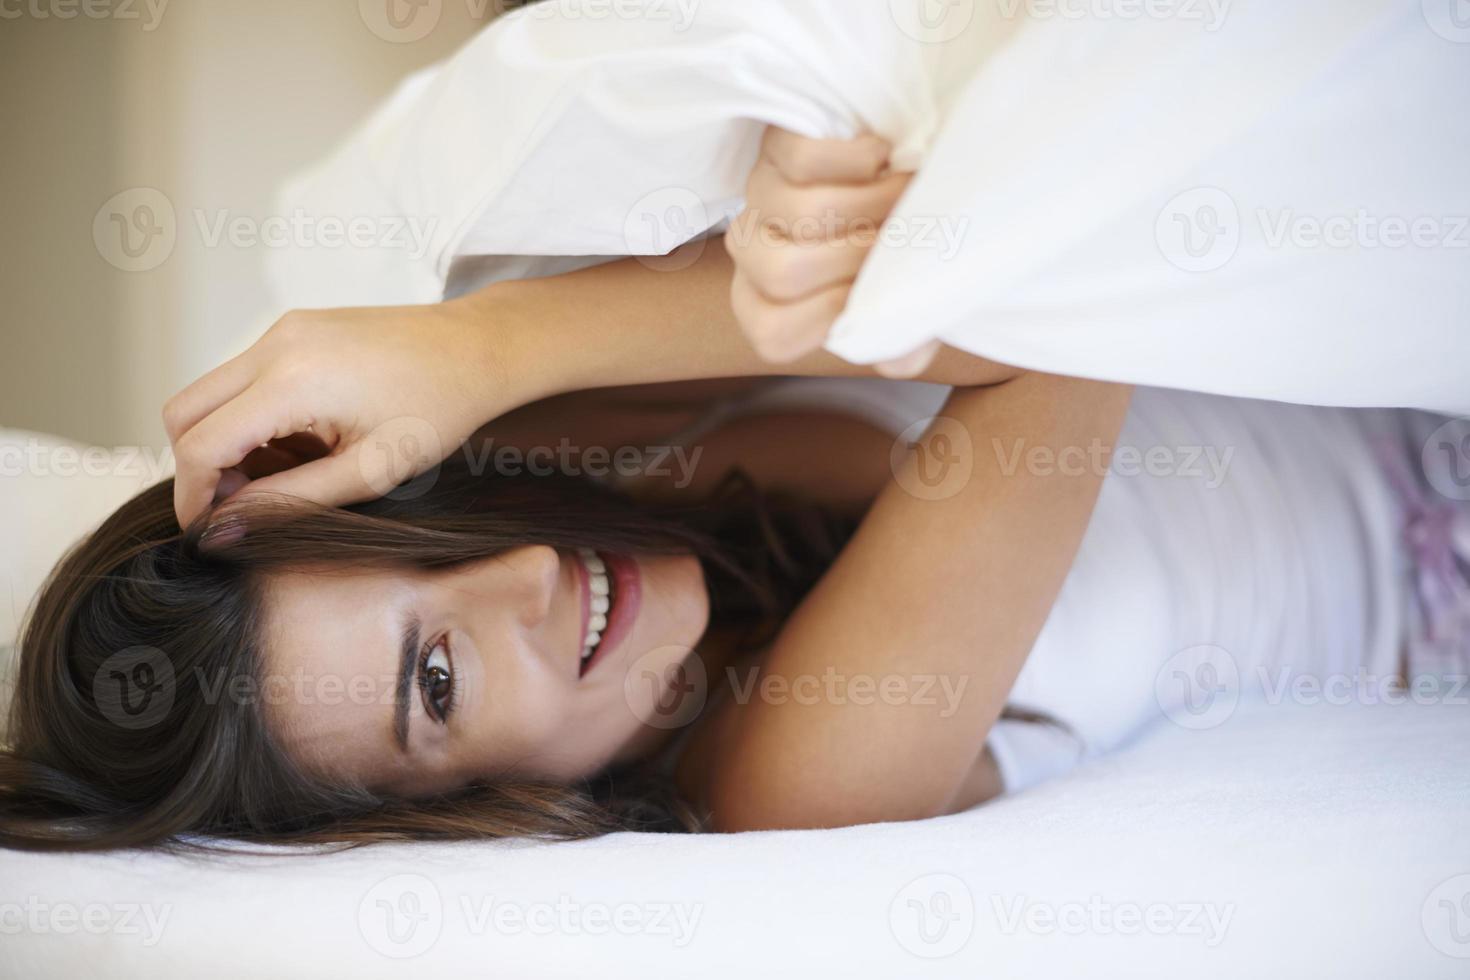 flertando com uma garota natural na cama foto